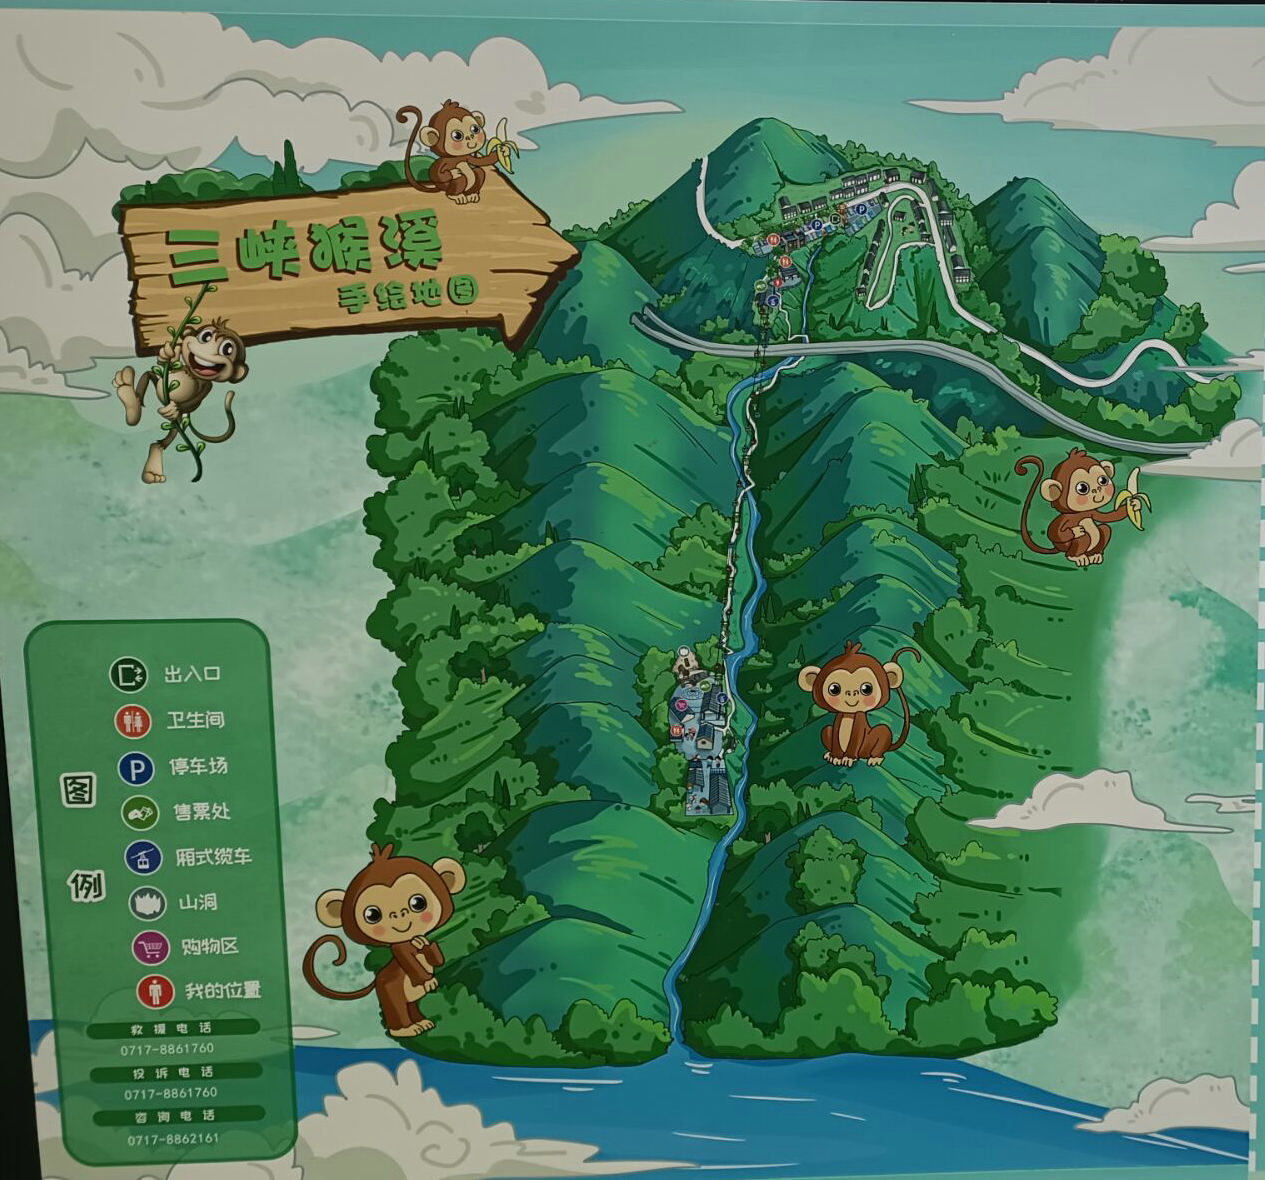 宜昌西陵峡口旅游猴溪手绘地图